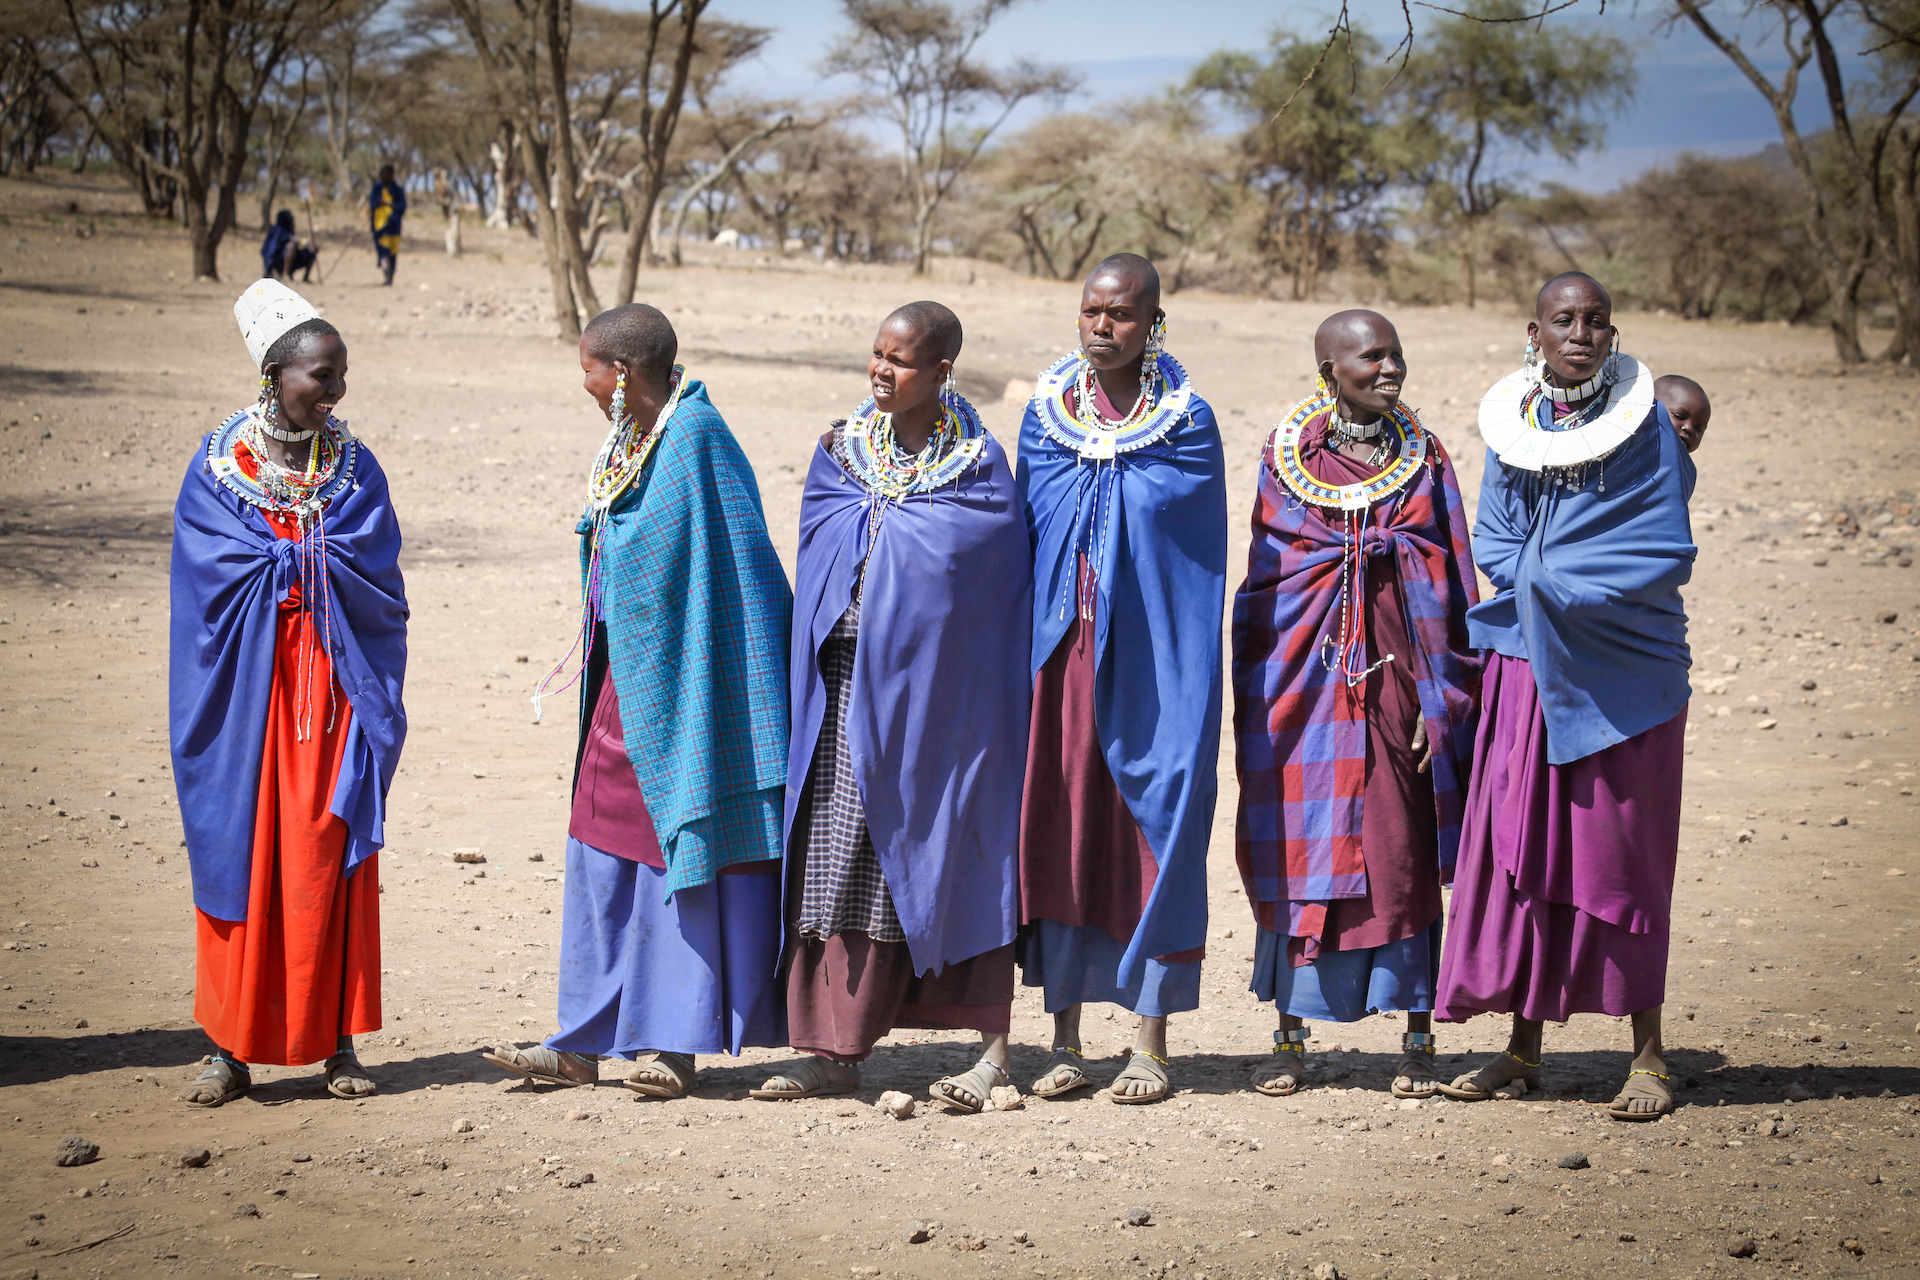 Masajská vesnice, NP Serengeti - Planeta lidí